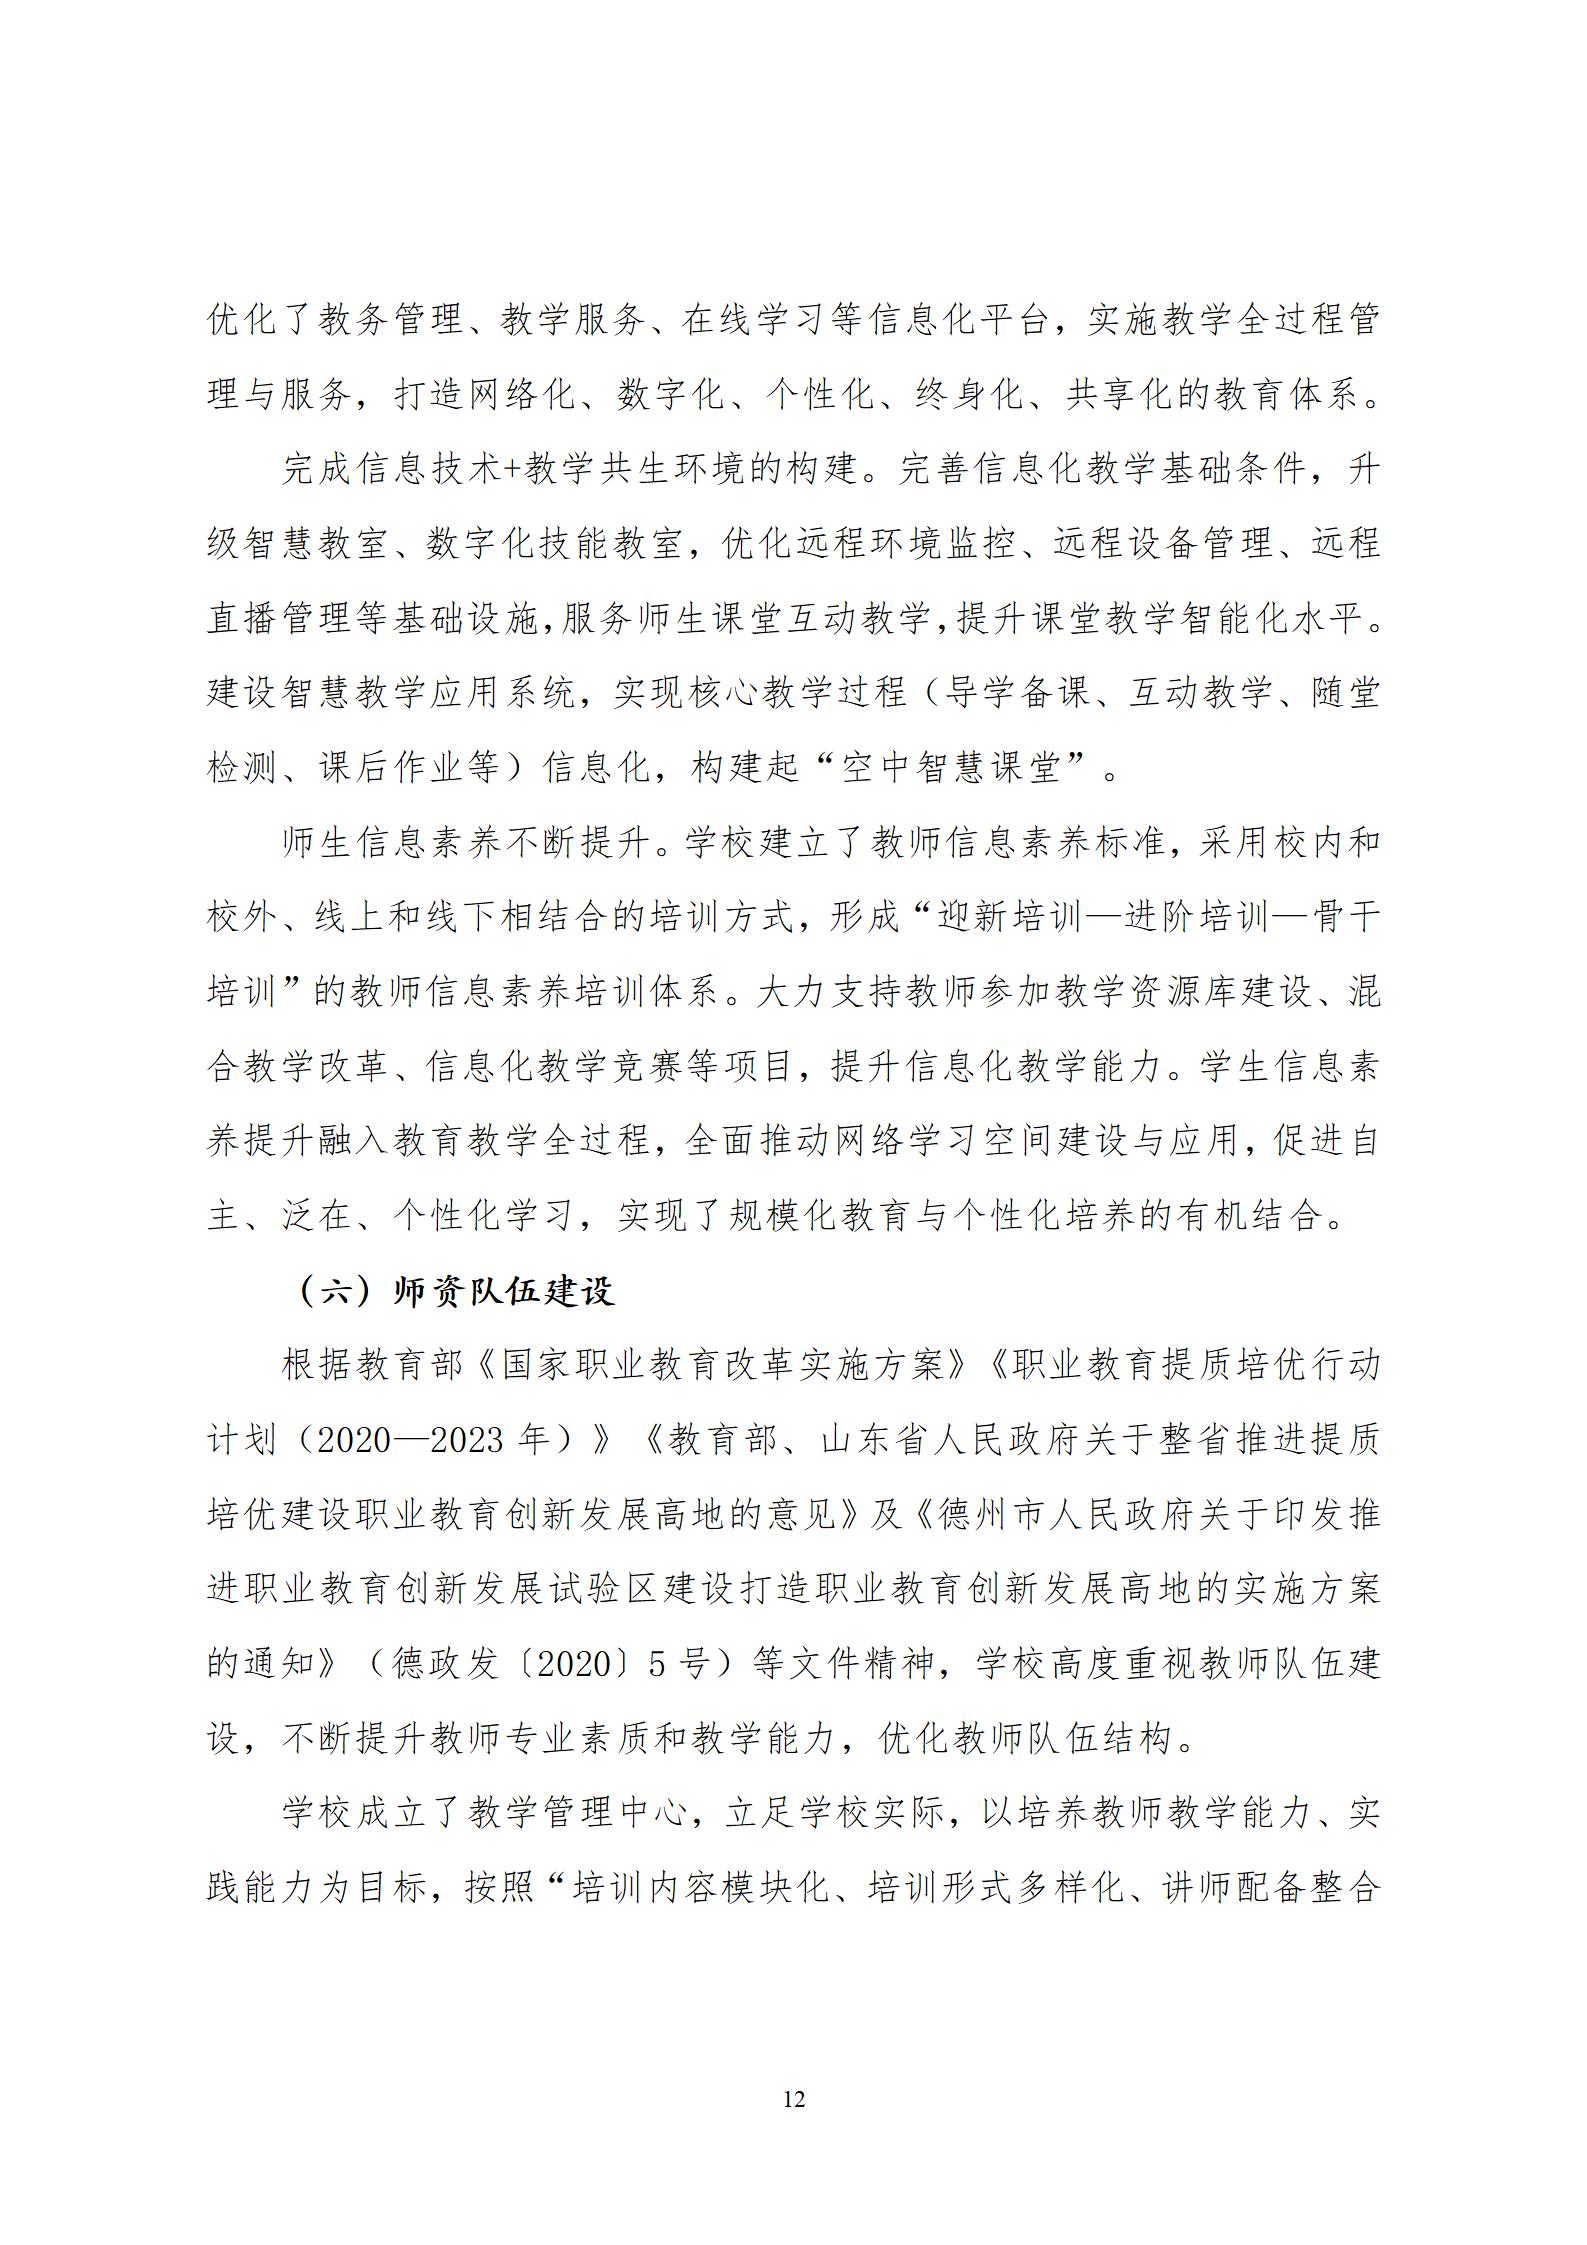 2022年渤海经济发展中等专业学校年度质量报告(1)_16.jpg